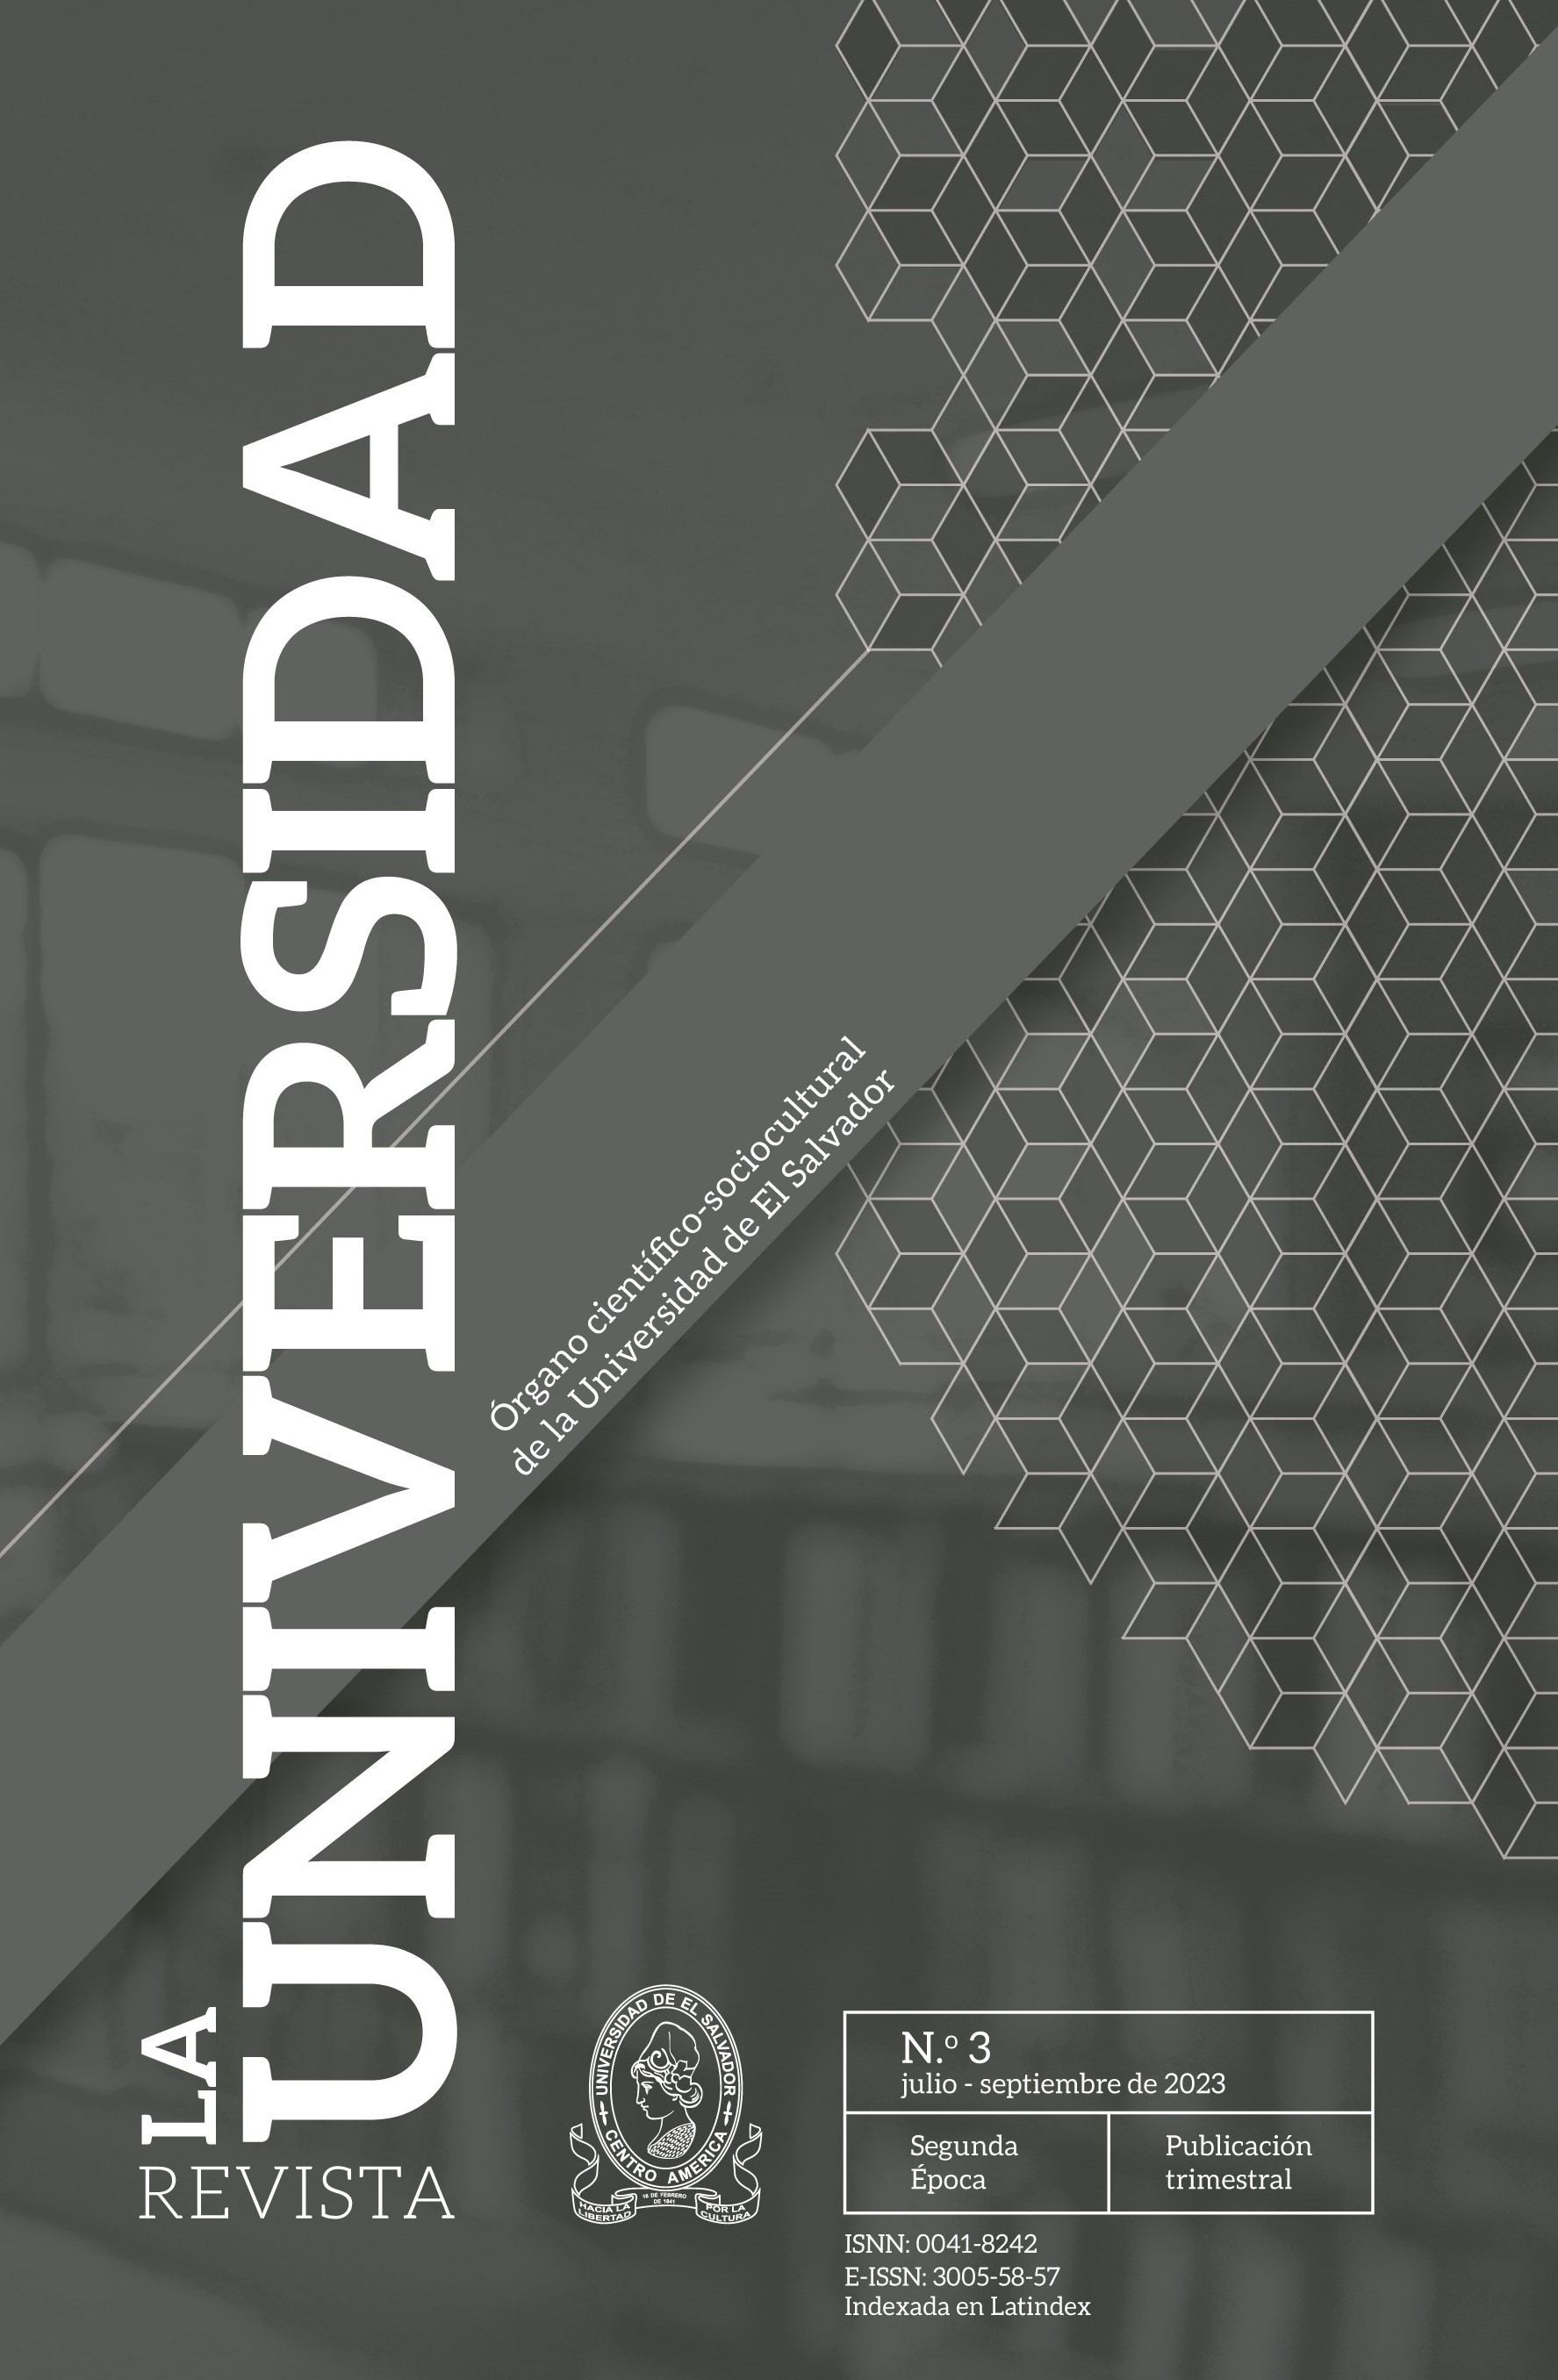 					View La Universidad Segunda Época, Volumen, N.° 3,   julio - septiembre 2023
				